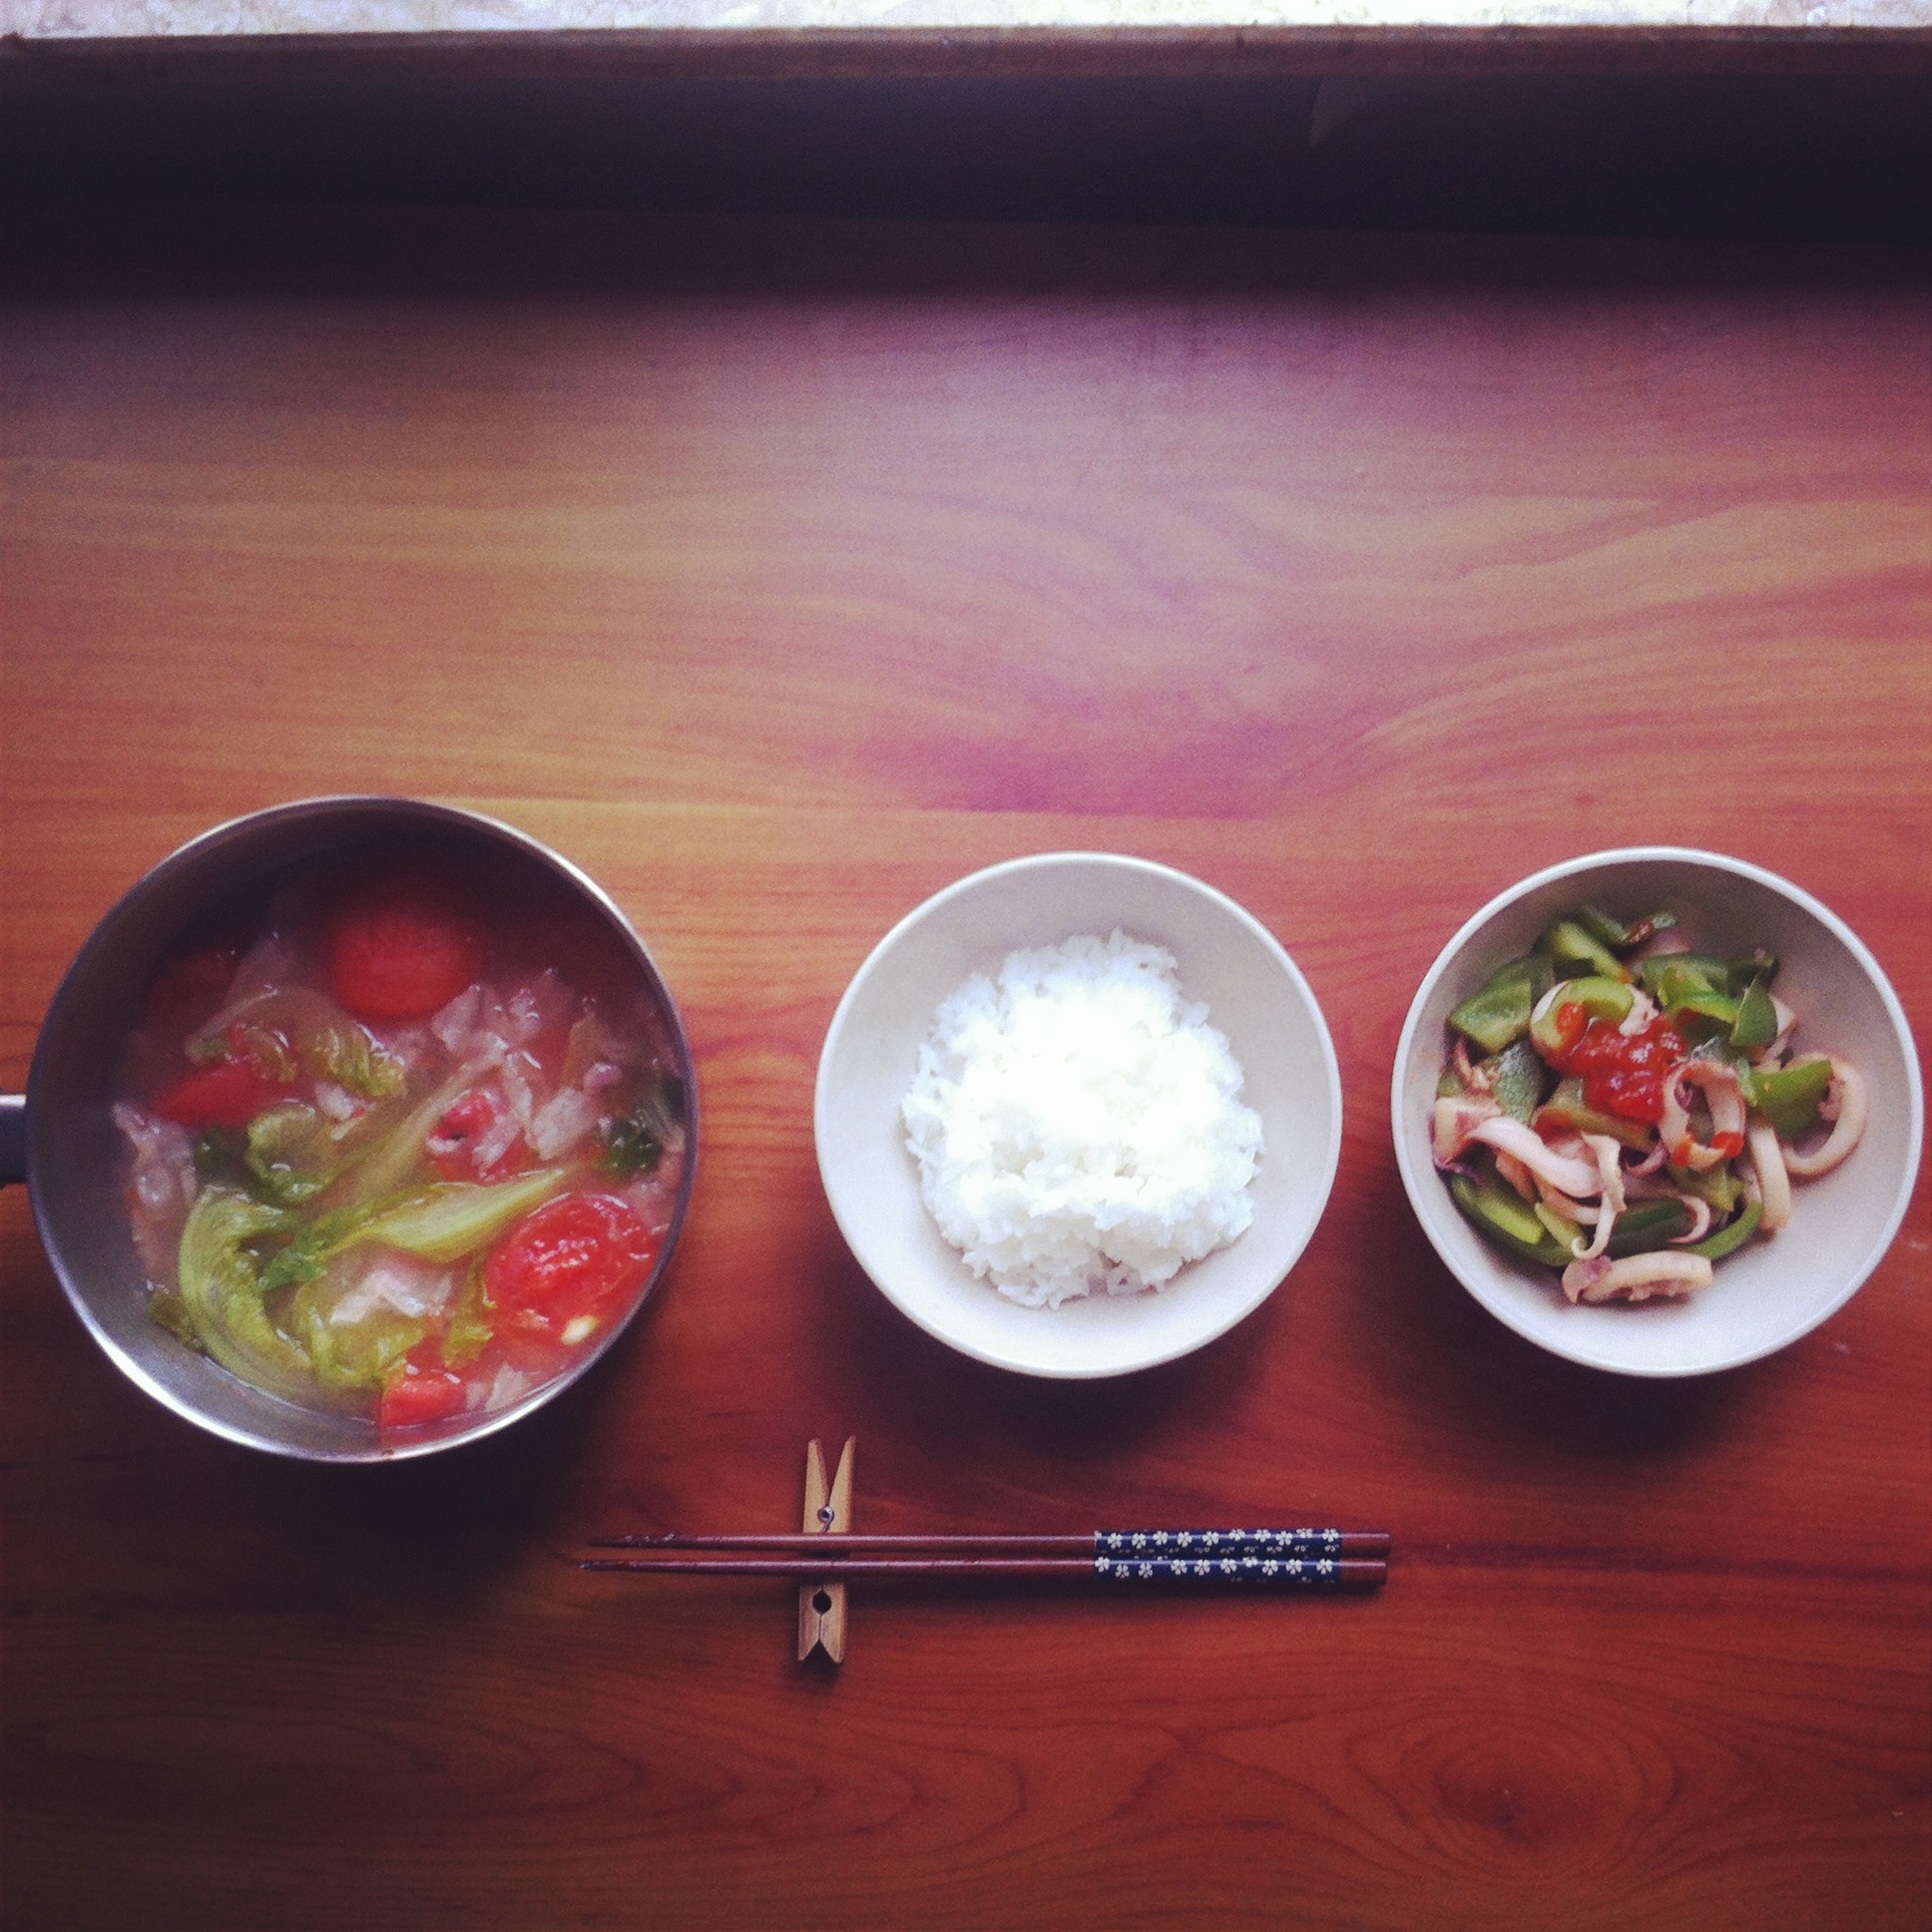 ajianzhang原创午餐 一人食 午餐便当的做法